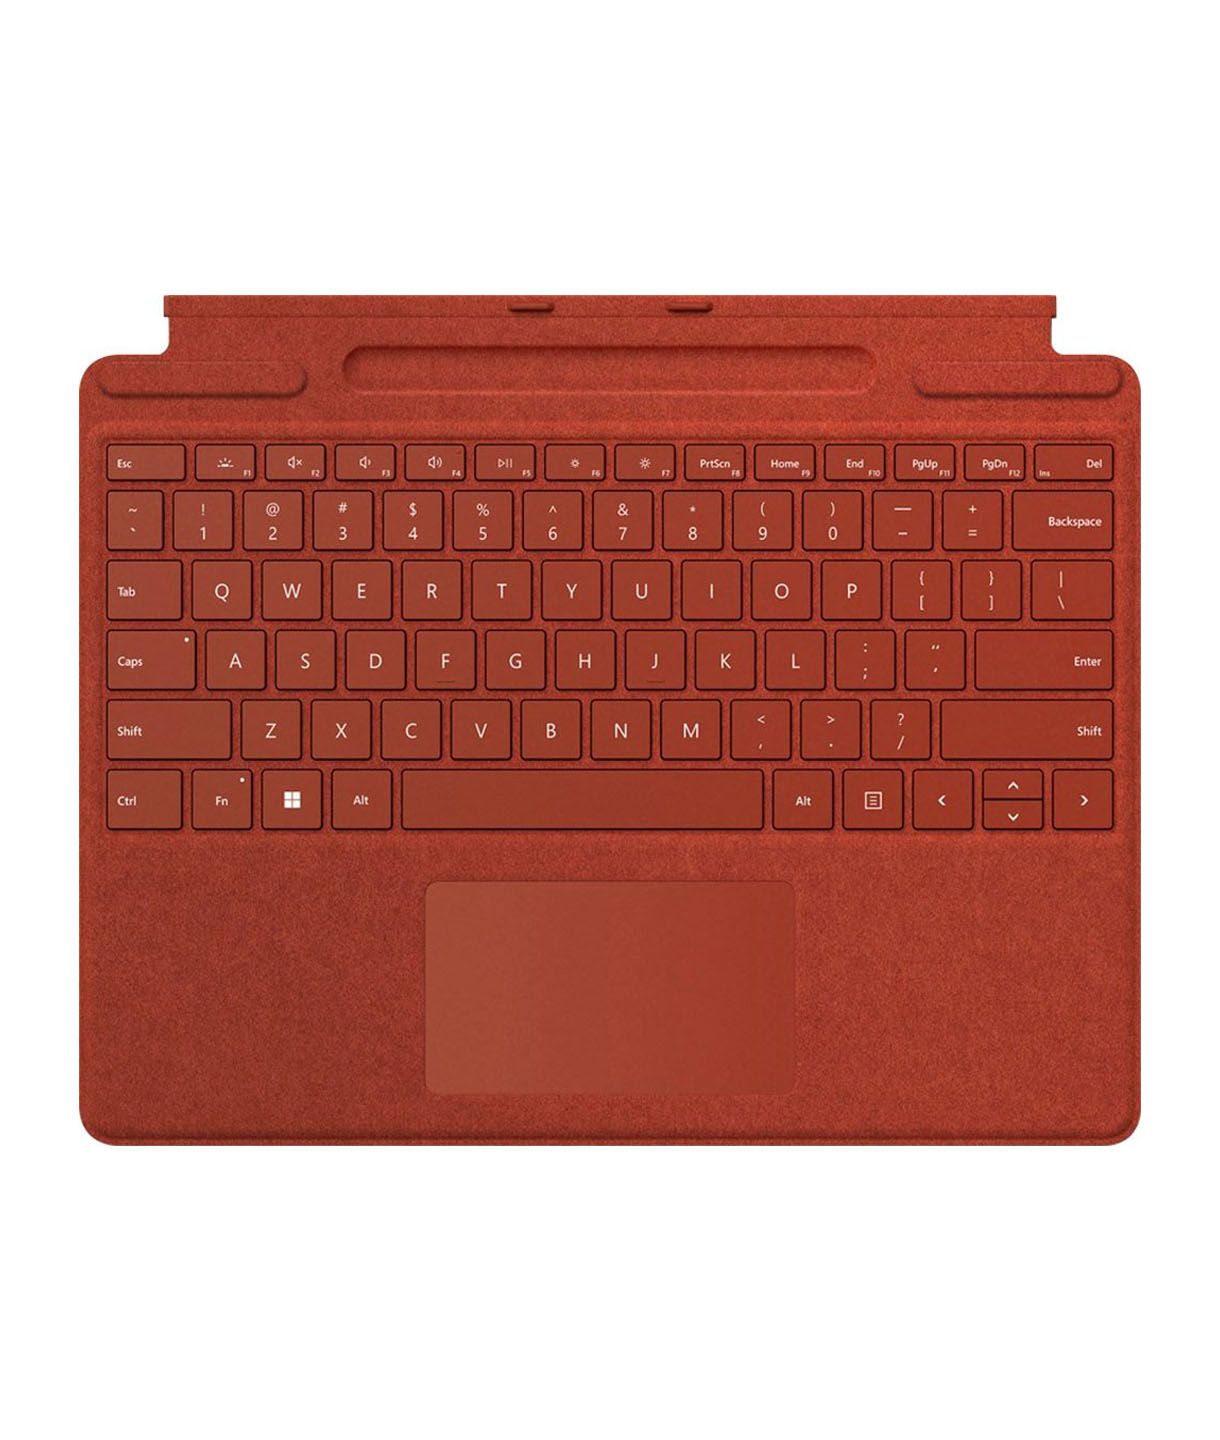 Surface Pro Signature Keyboard 1